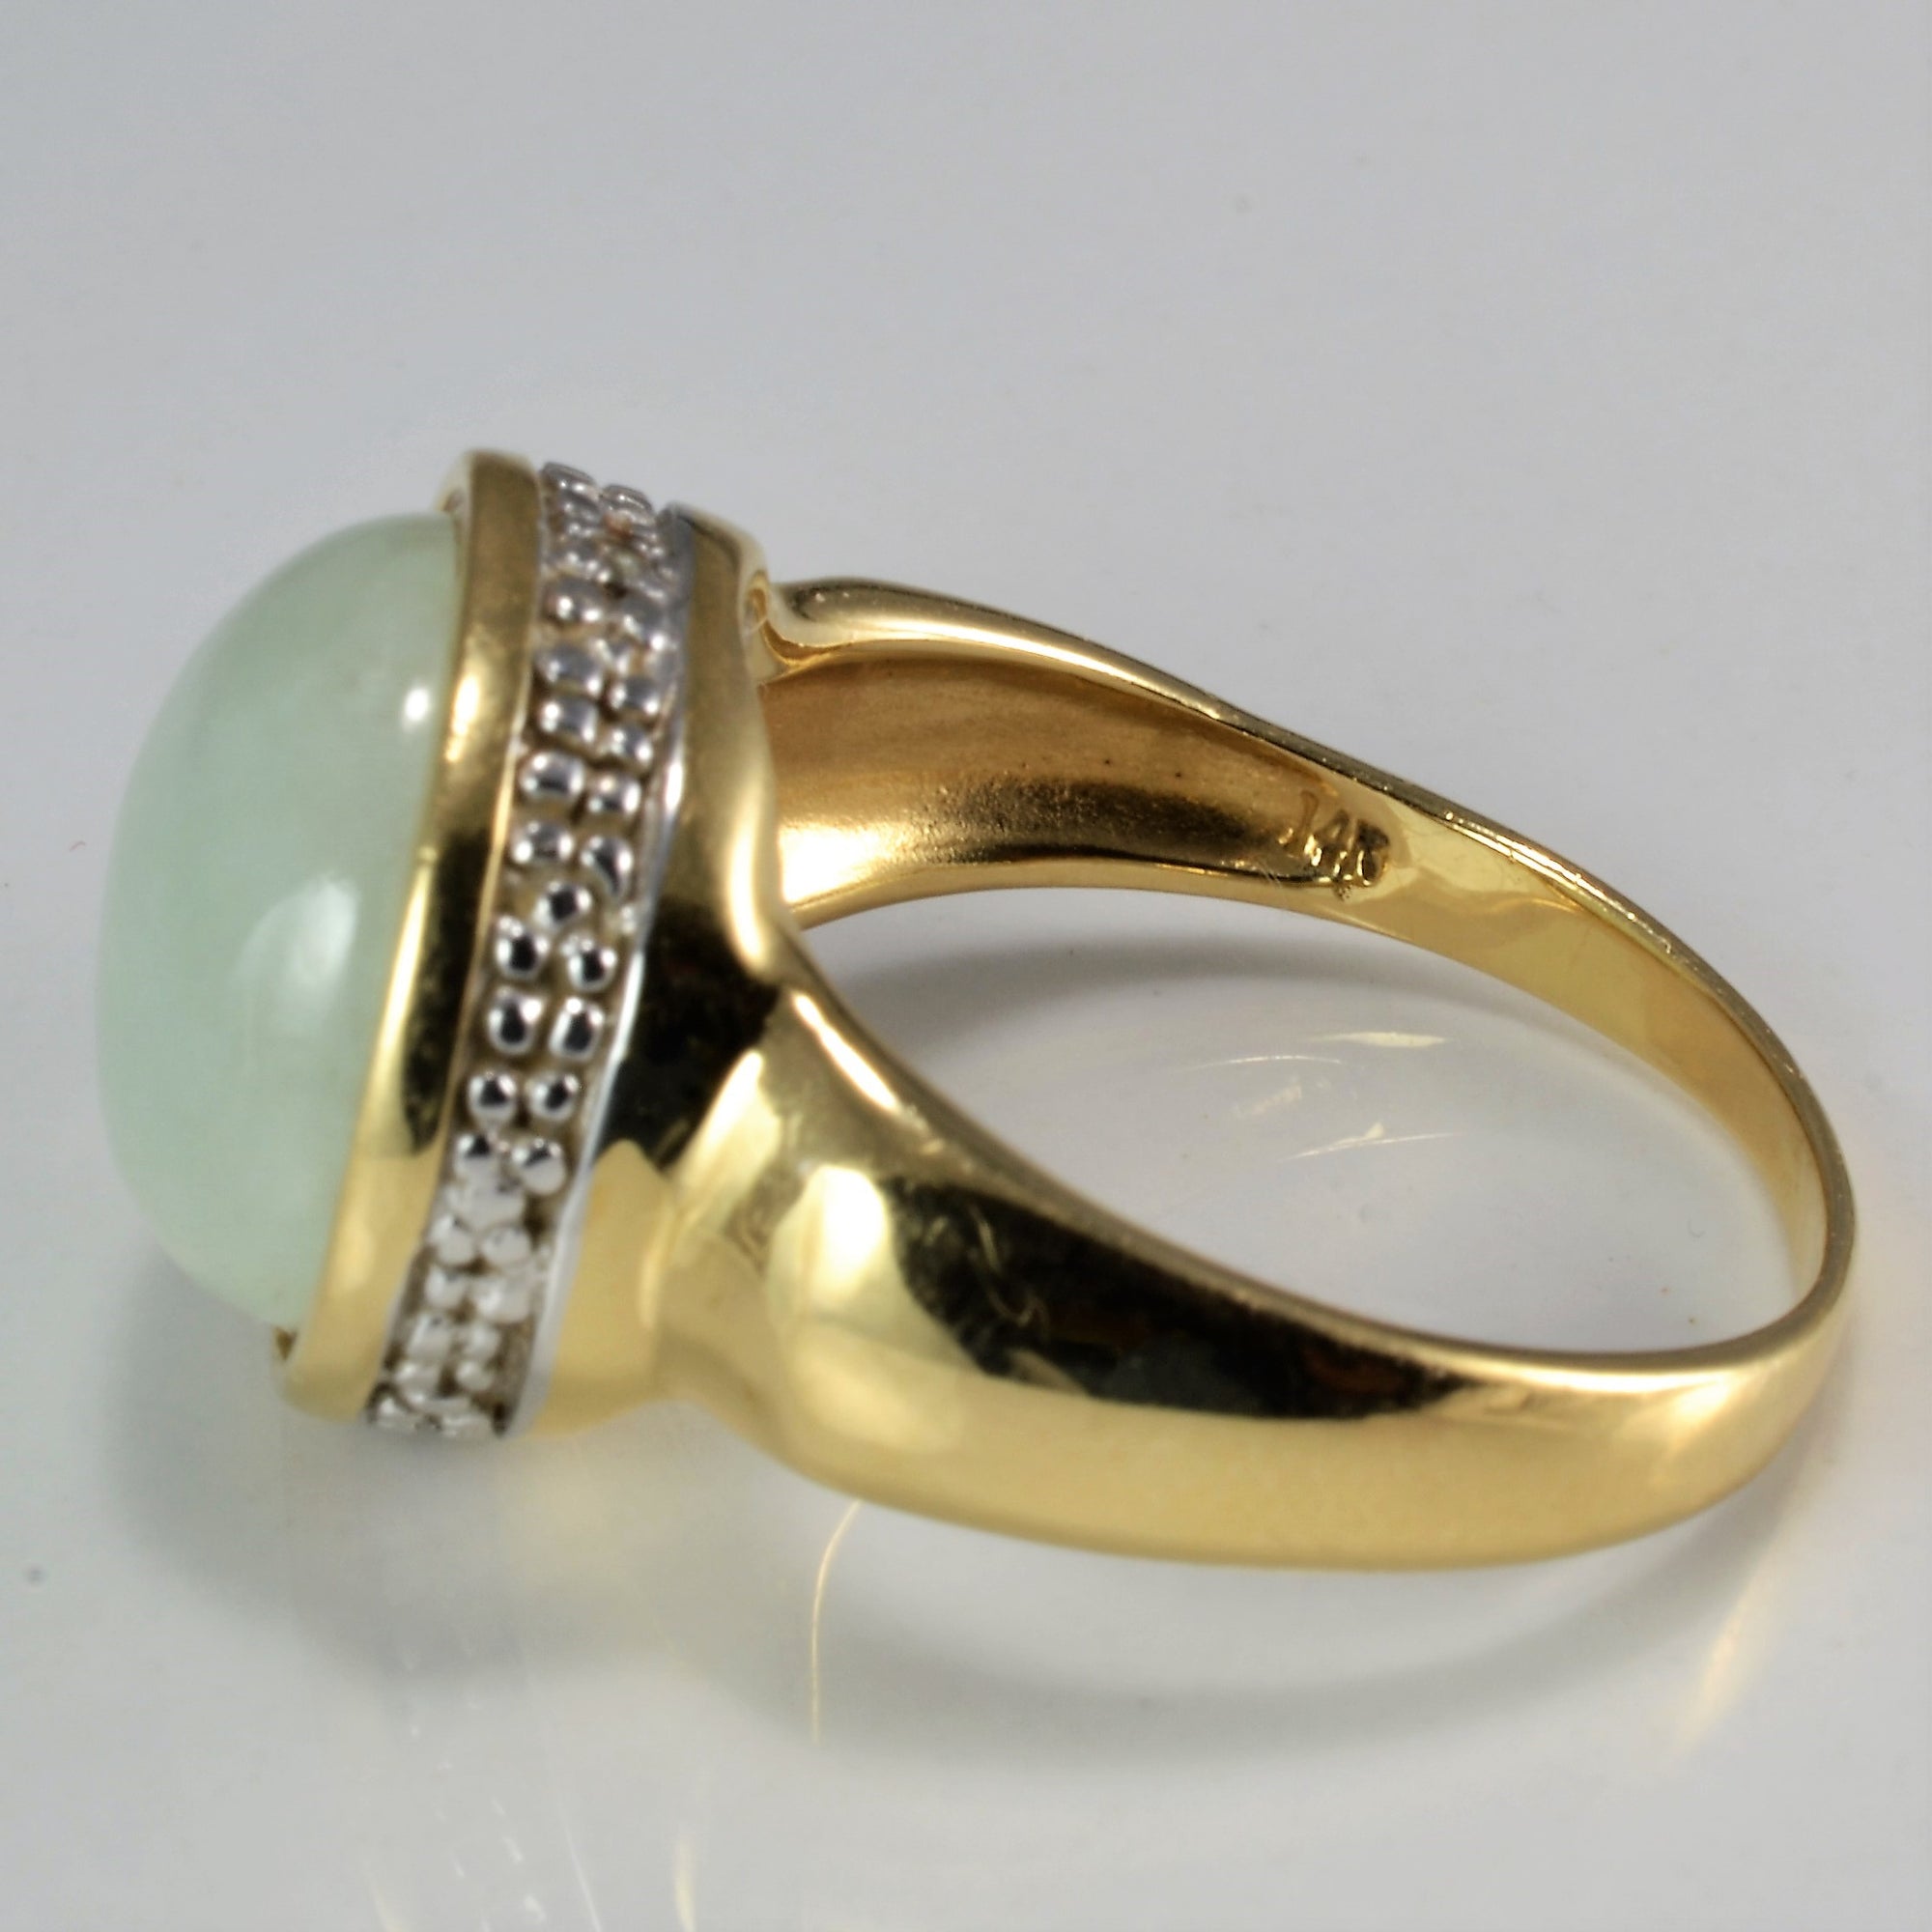 Bezel Set Jade & Diamond Ring | 0.02 ctw, SZ 7.75 |